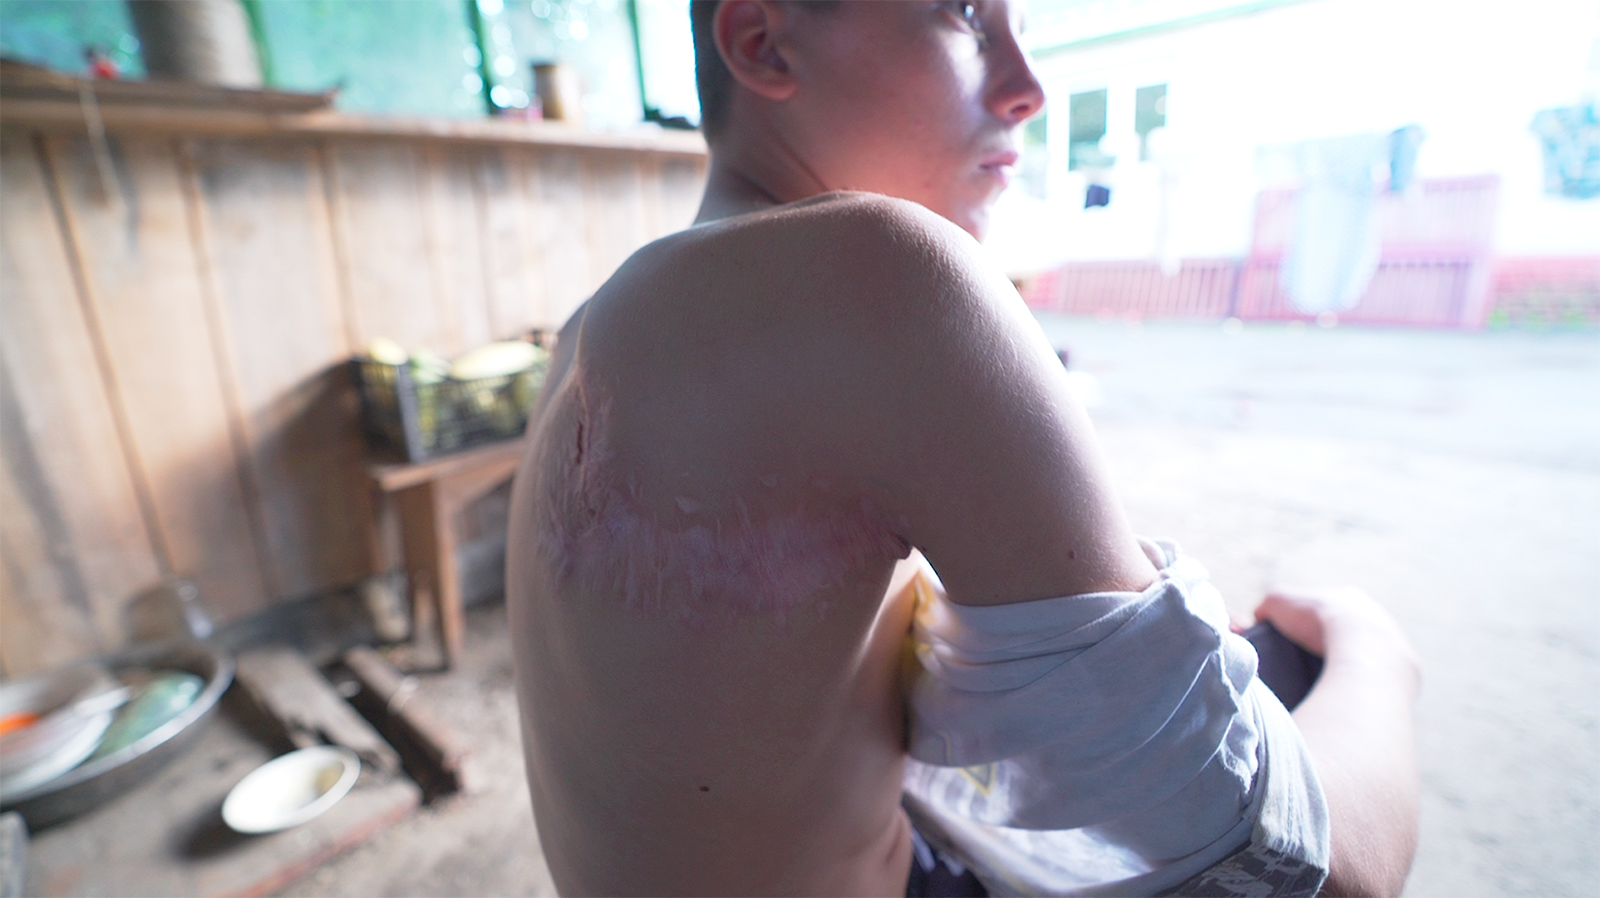 Terluka oleh perang, bekas luka pada anak-anak yang terluka di Ukraina lebih dari sekadar kulit